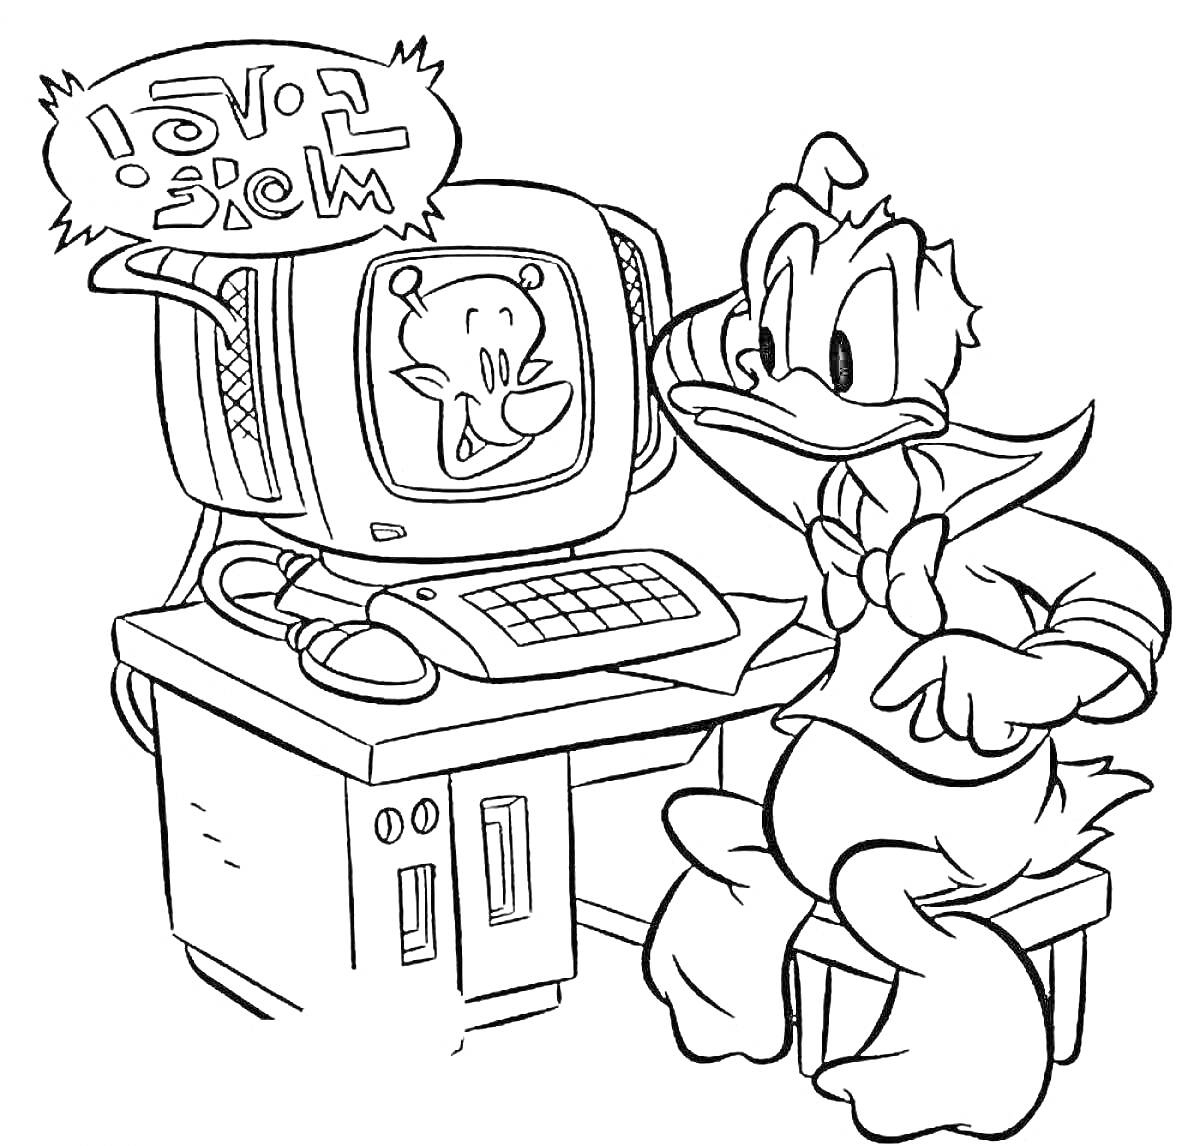 Раскраска Утка сидит за компьютером, возле монитора с персонажем на экране, стол, клавиатура, телефон, табурет